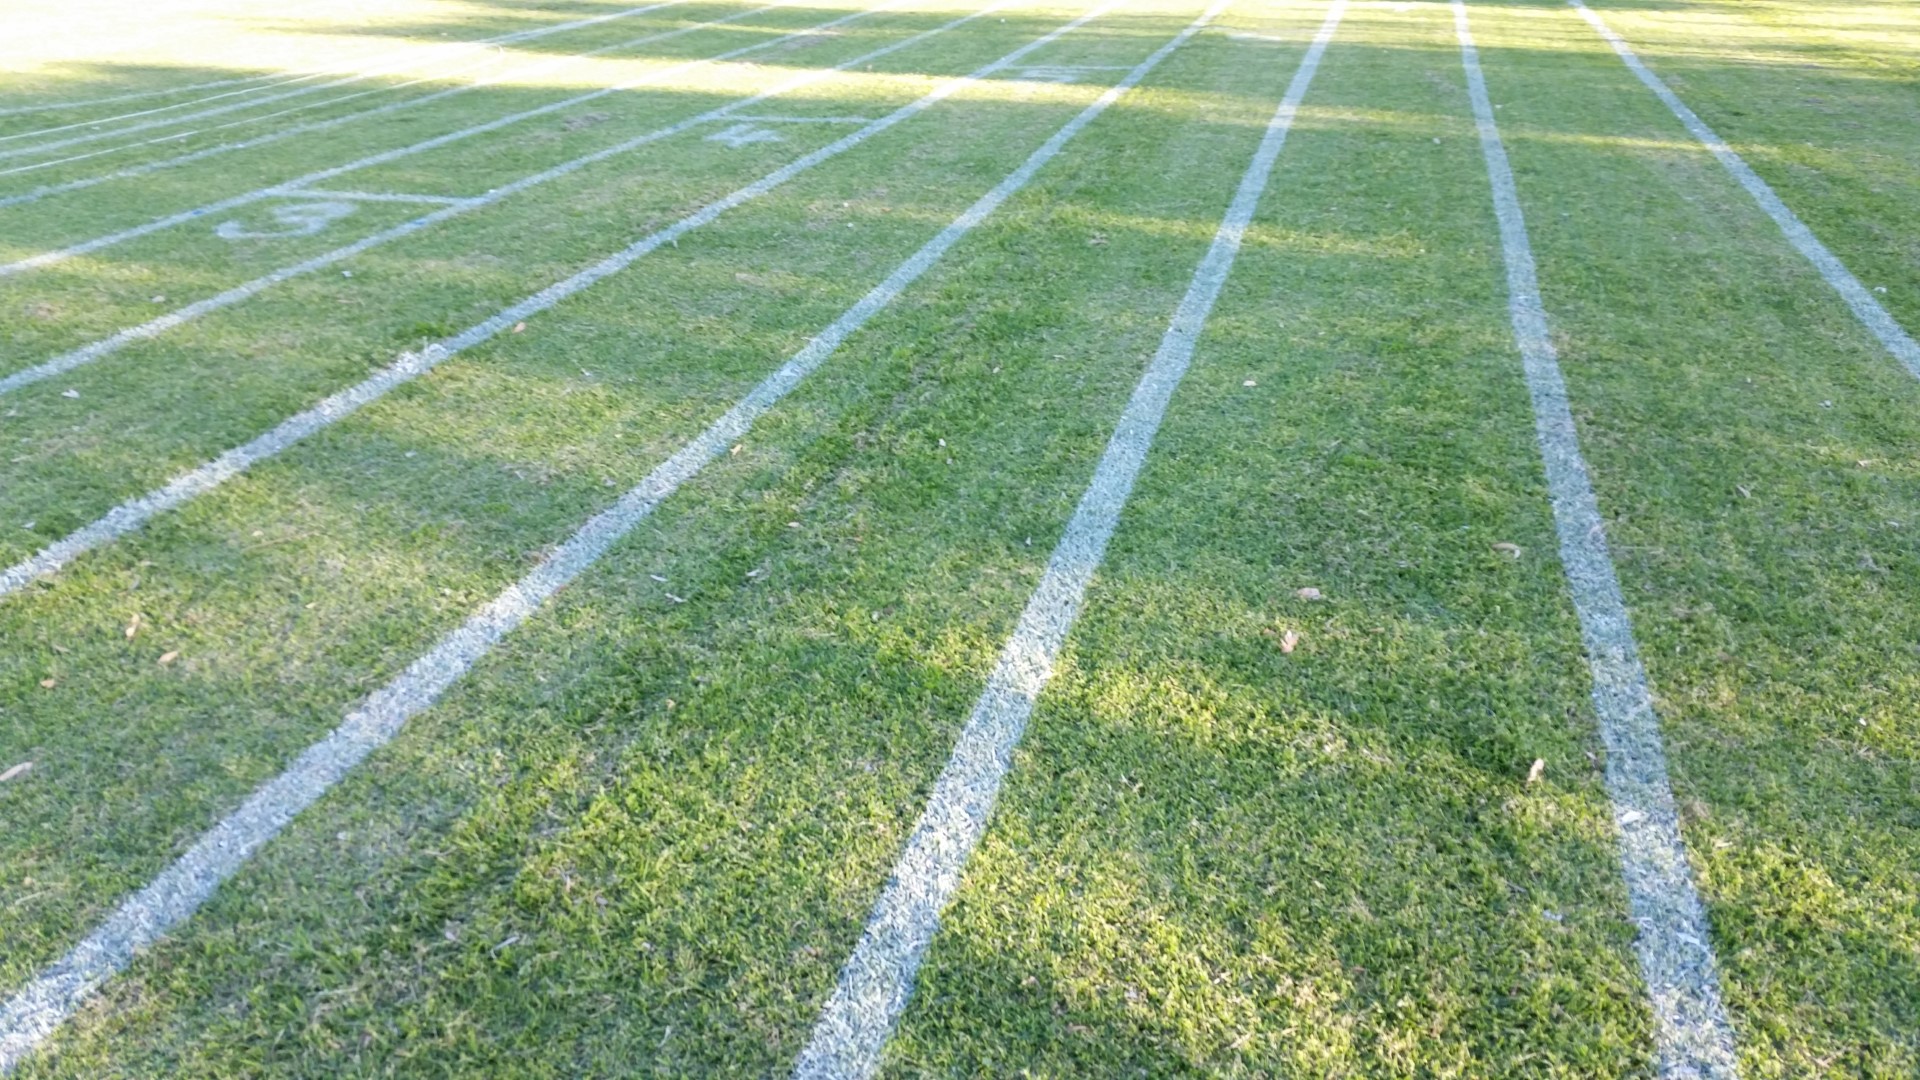 Sports Field Line Marking - 1